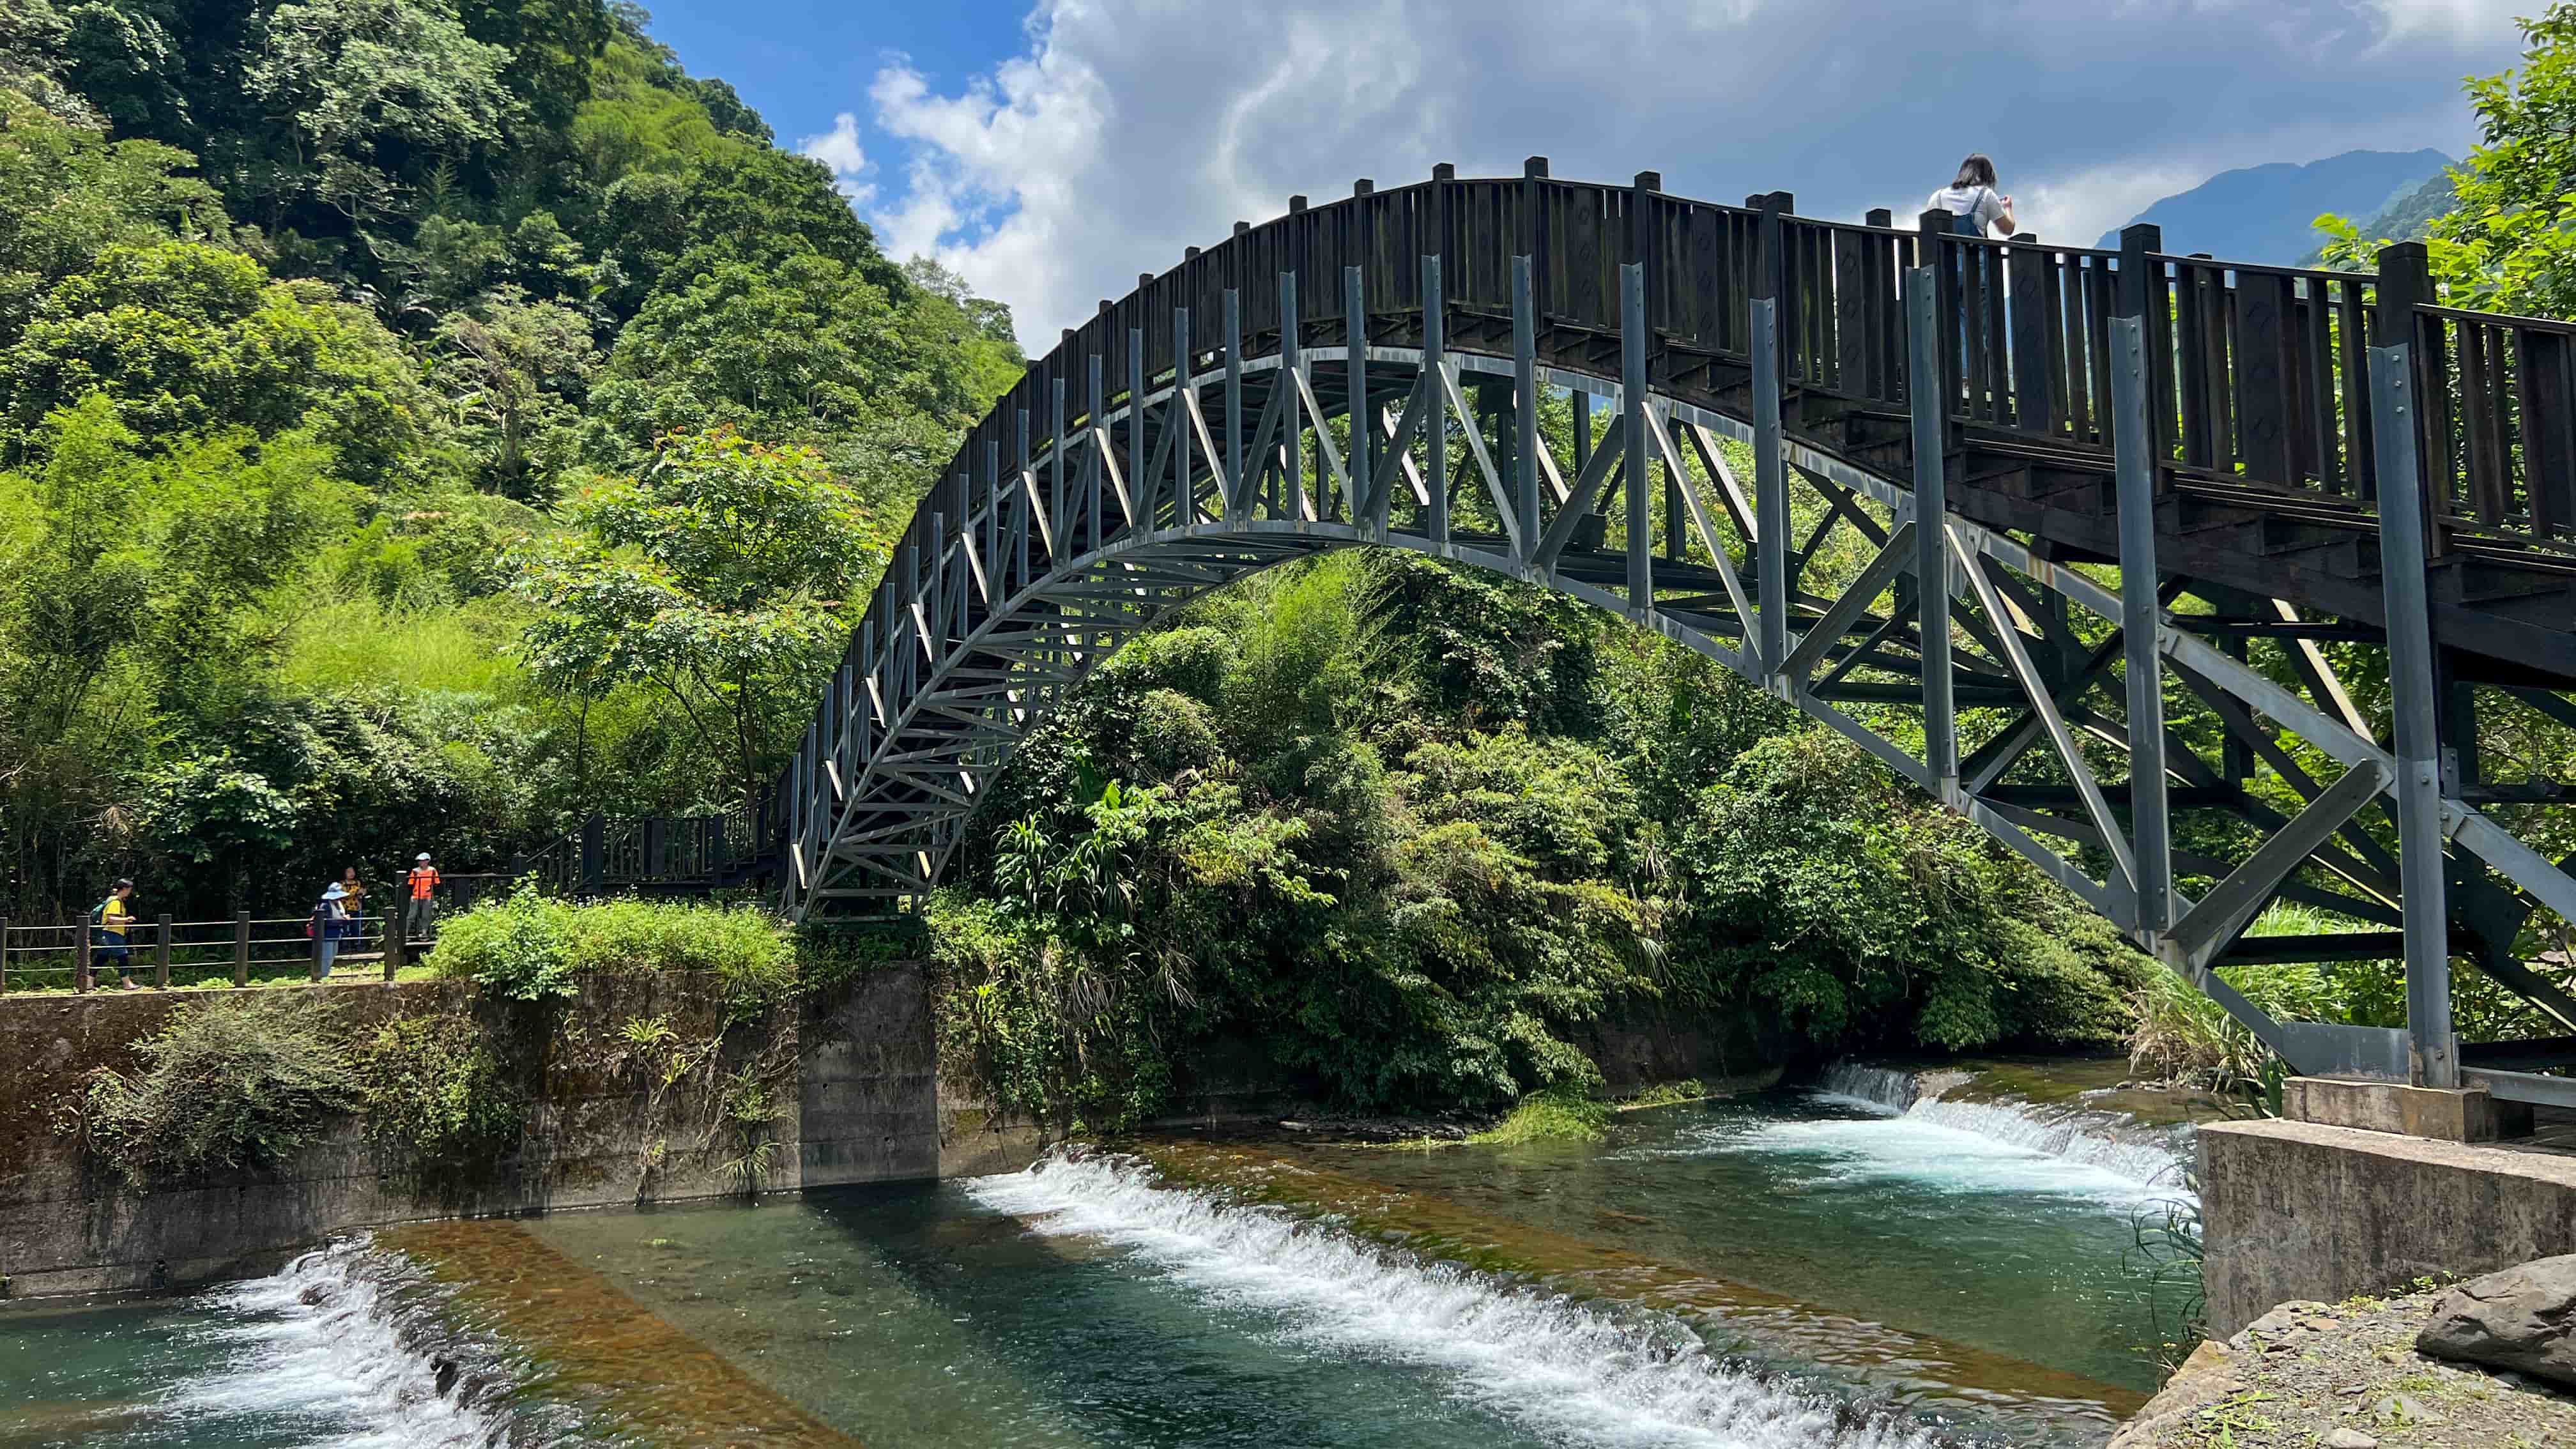 走上最美觀景拱橋可以俯瞰清澈見底的大羅蘭溪與山林景緻